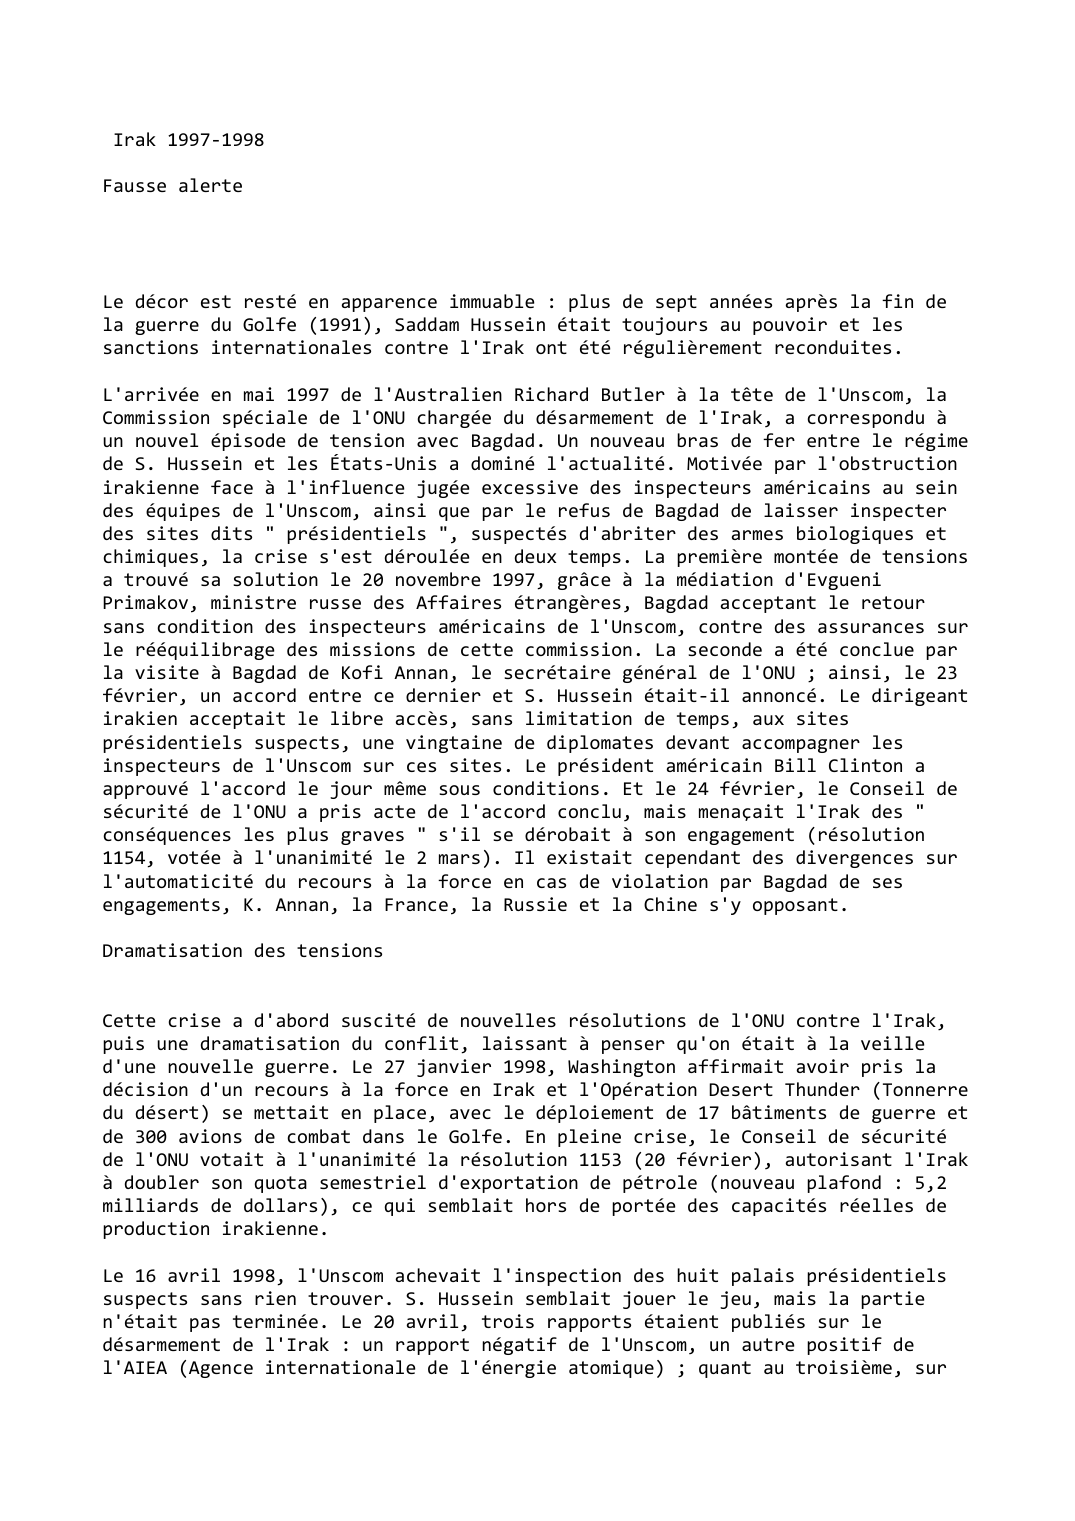 Prévisualisation du document Irak (1997-1998)

Fausse alerte